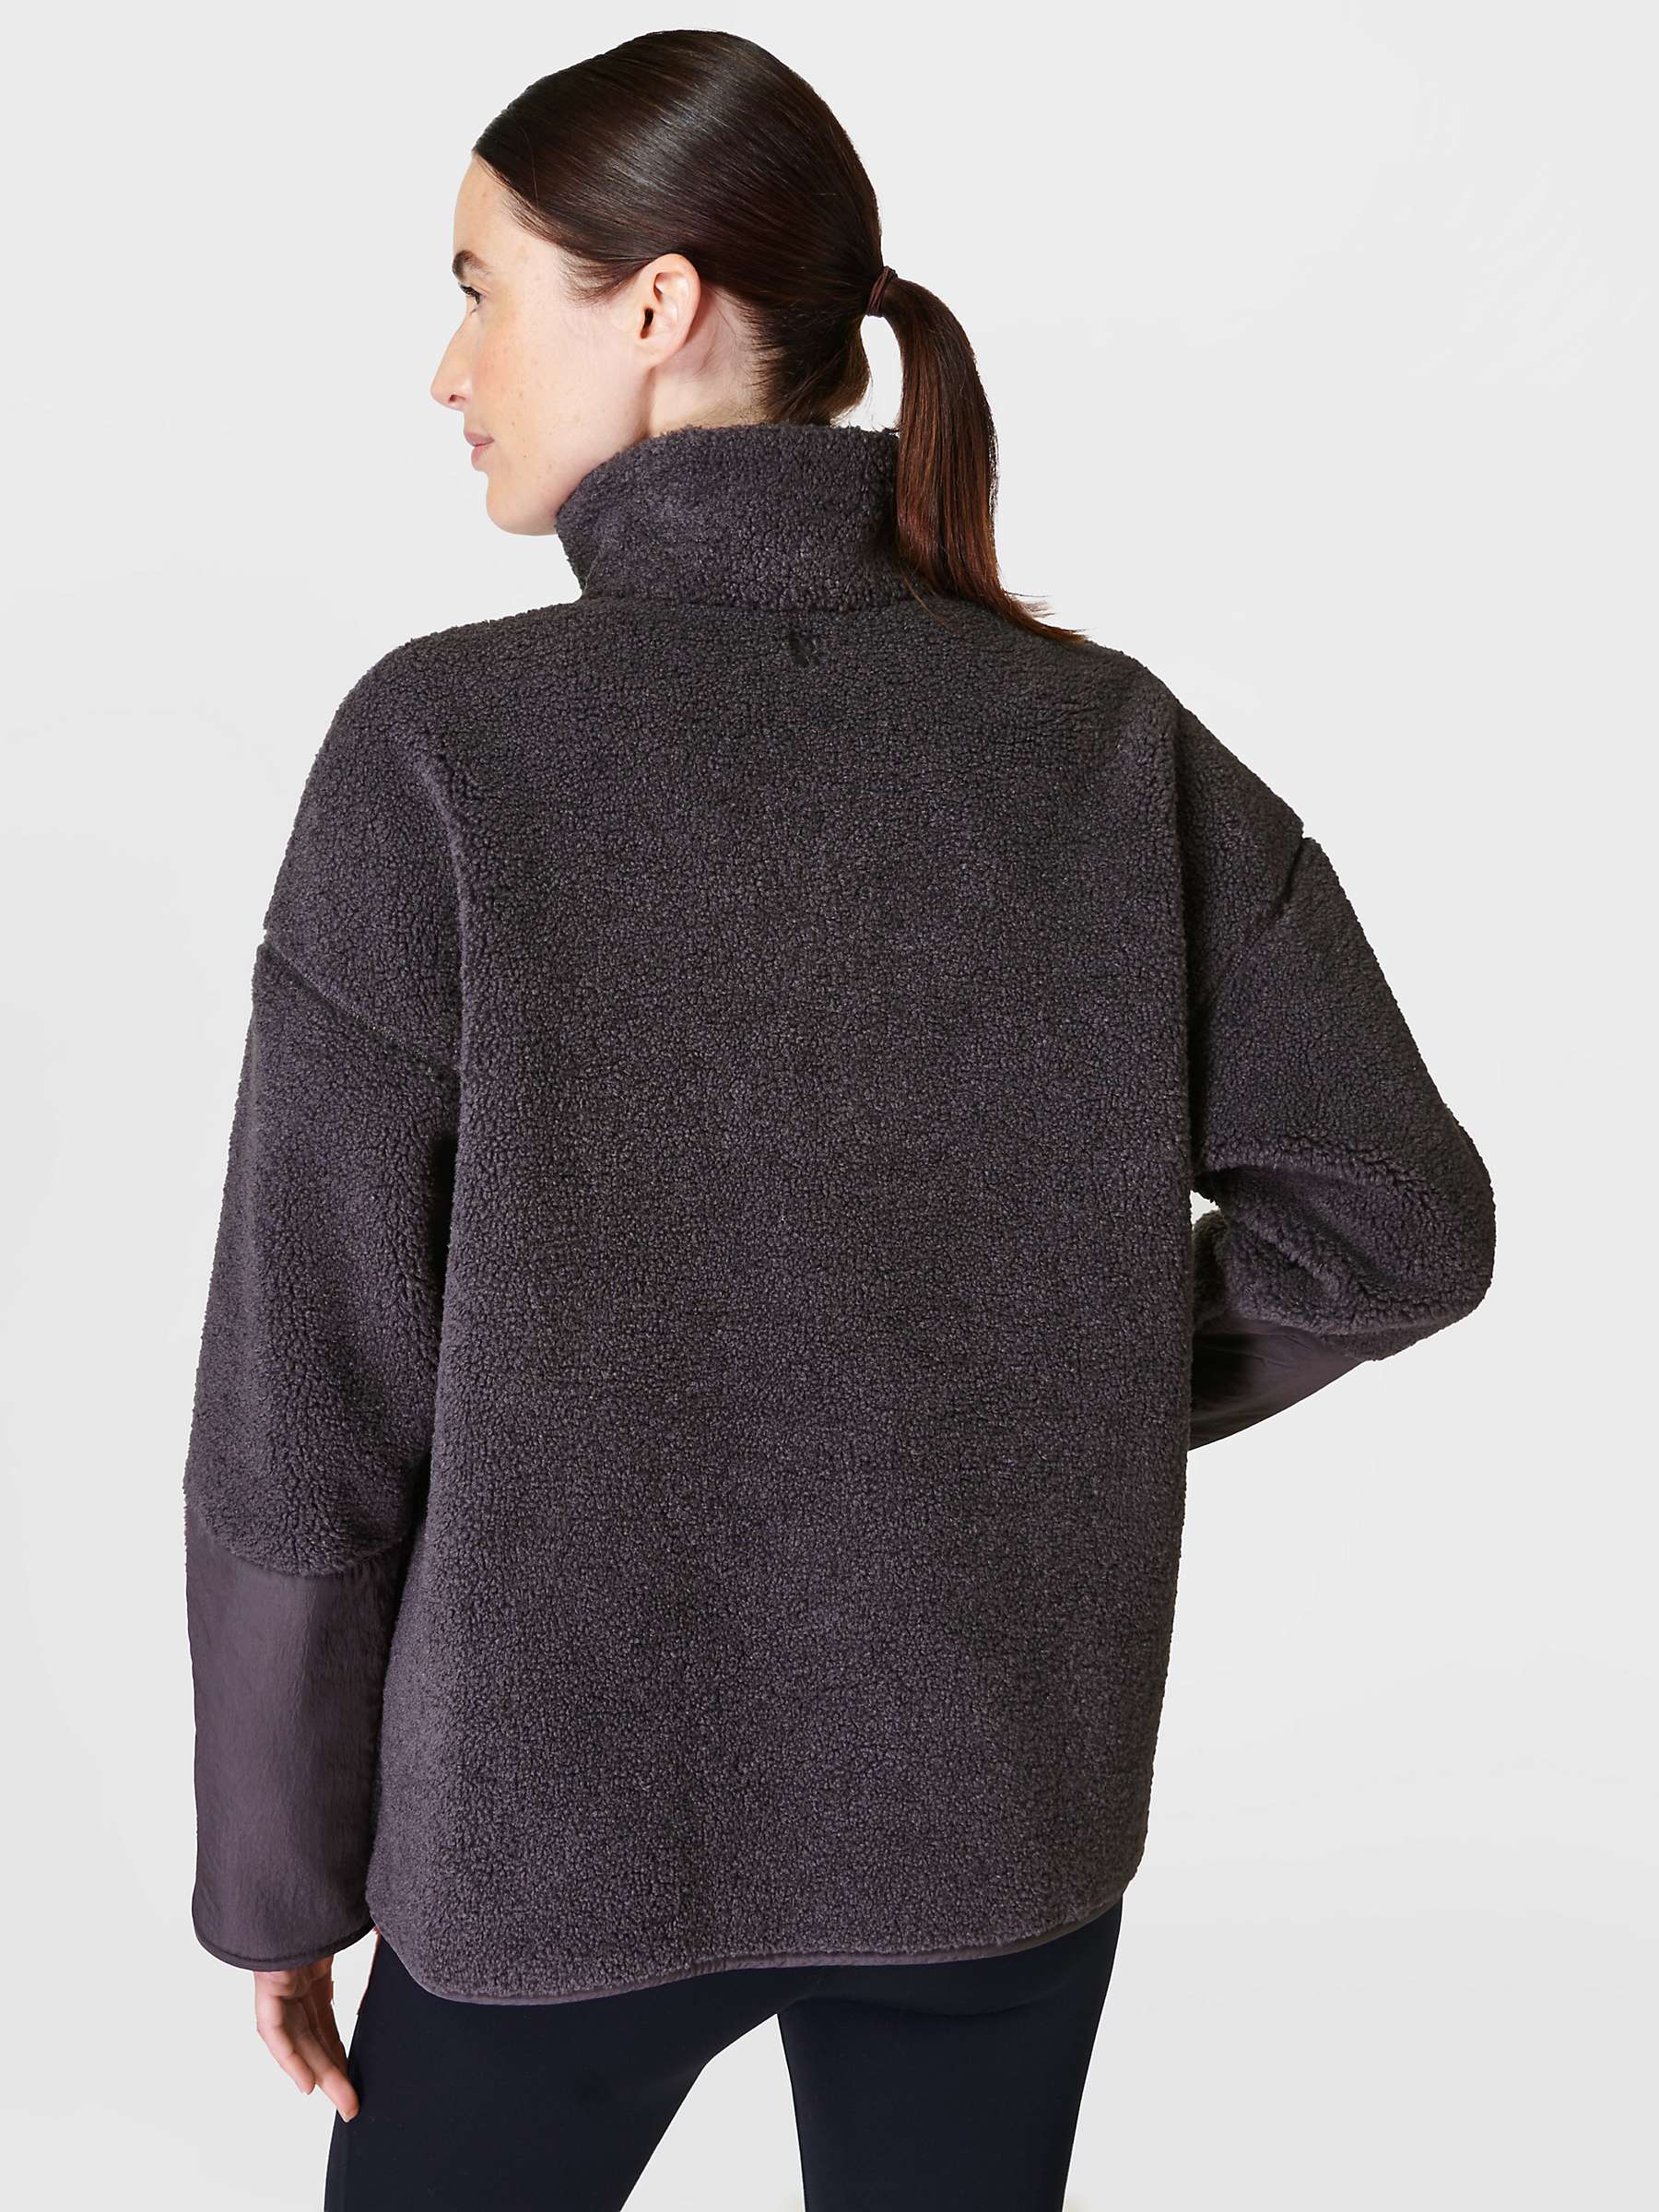 Buy Sweaty Betty Plush Textured Fleece Half Zip Jumper Online at johnlewis.com